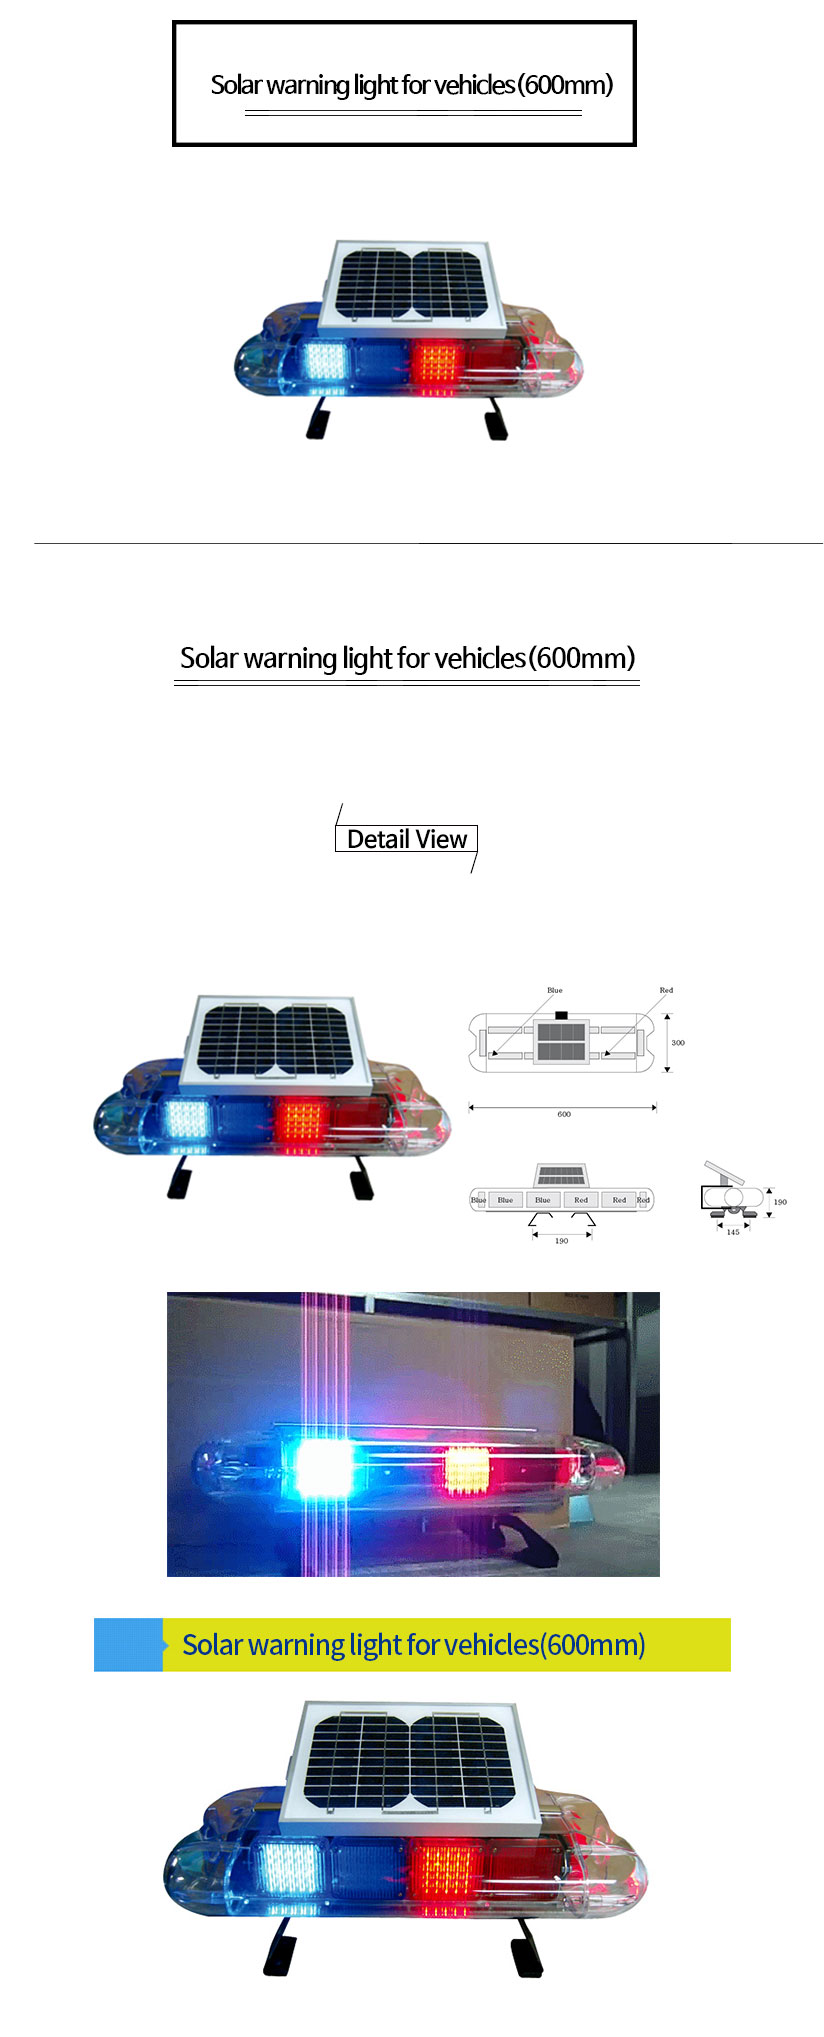 쏠라-장방형경광등(600mm)Solar-warning-light-for-vehicles(600mm).jpg